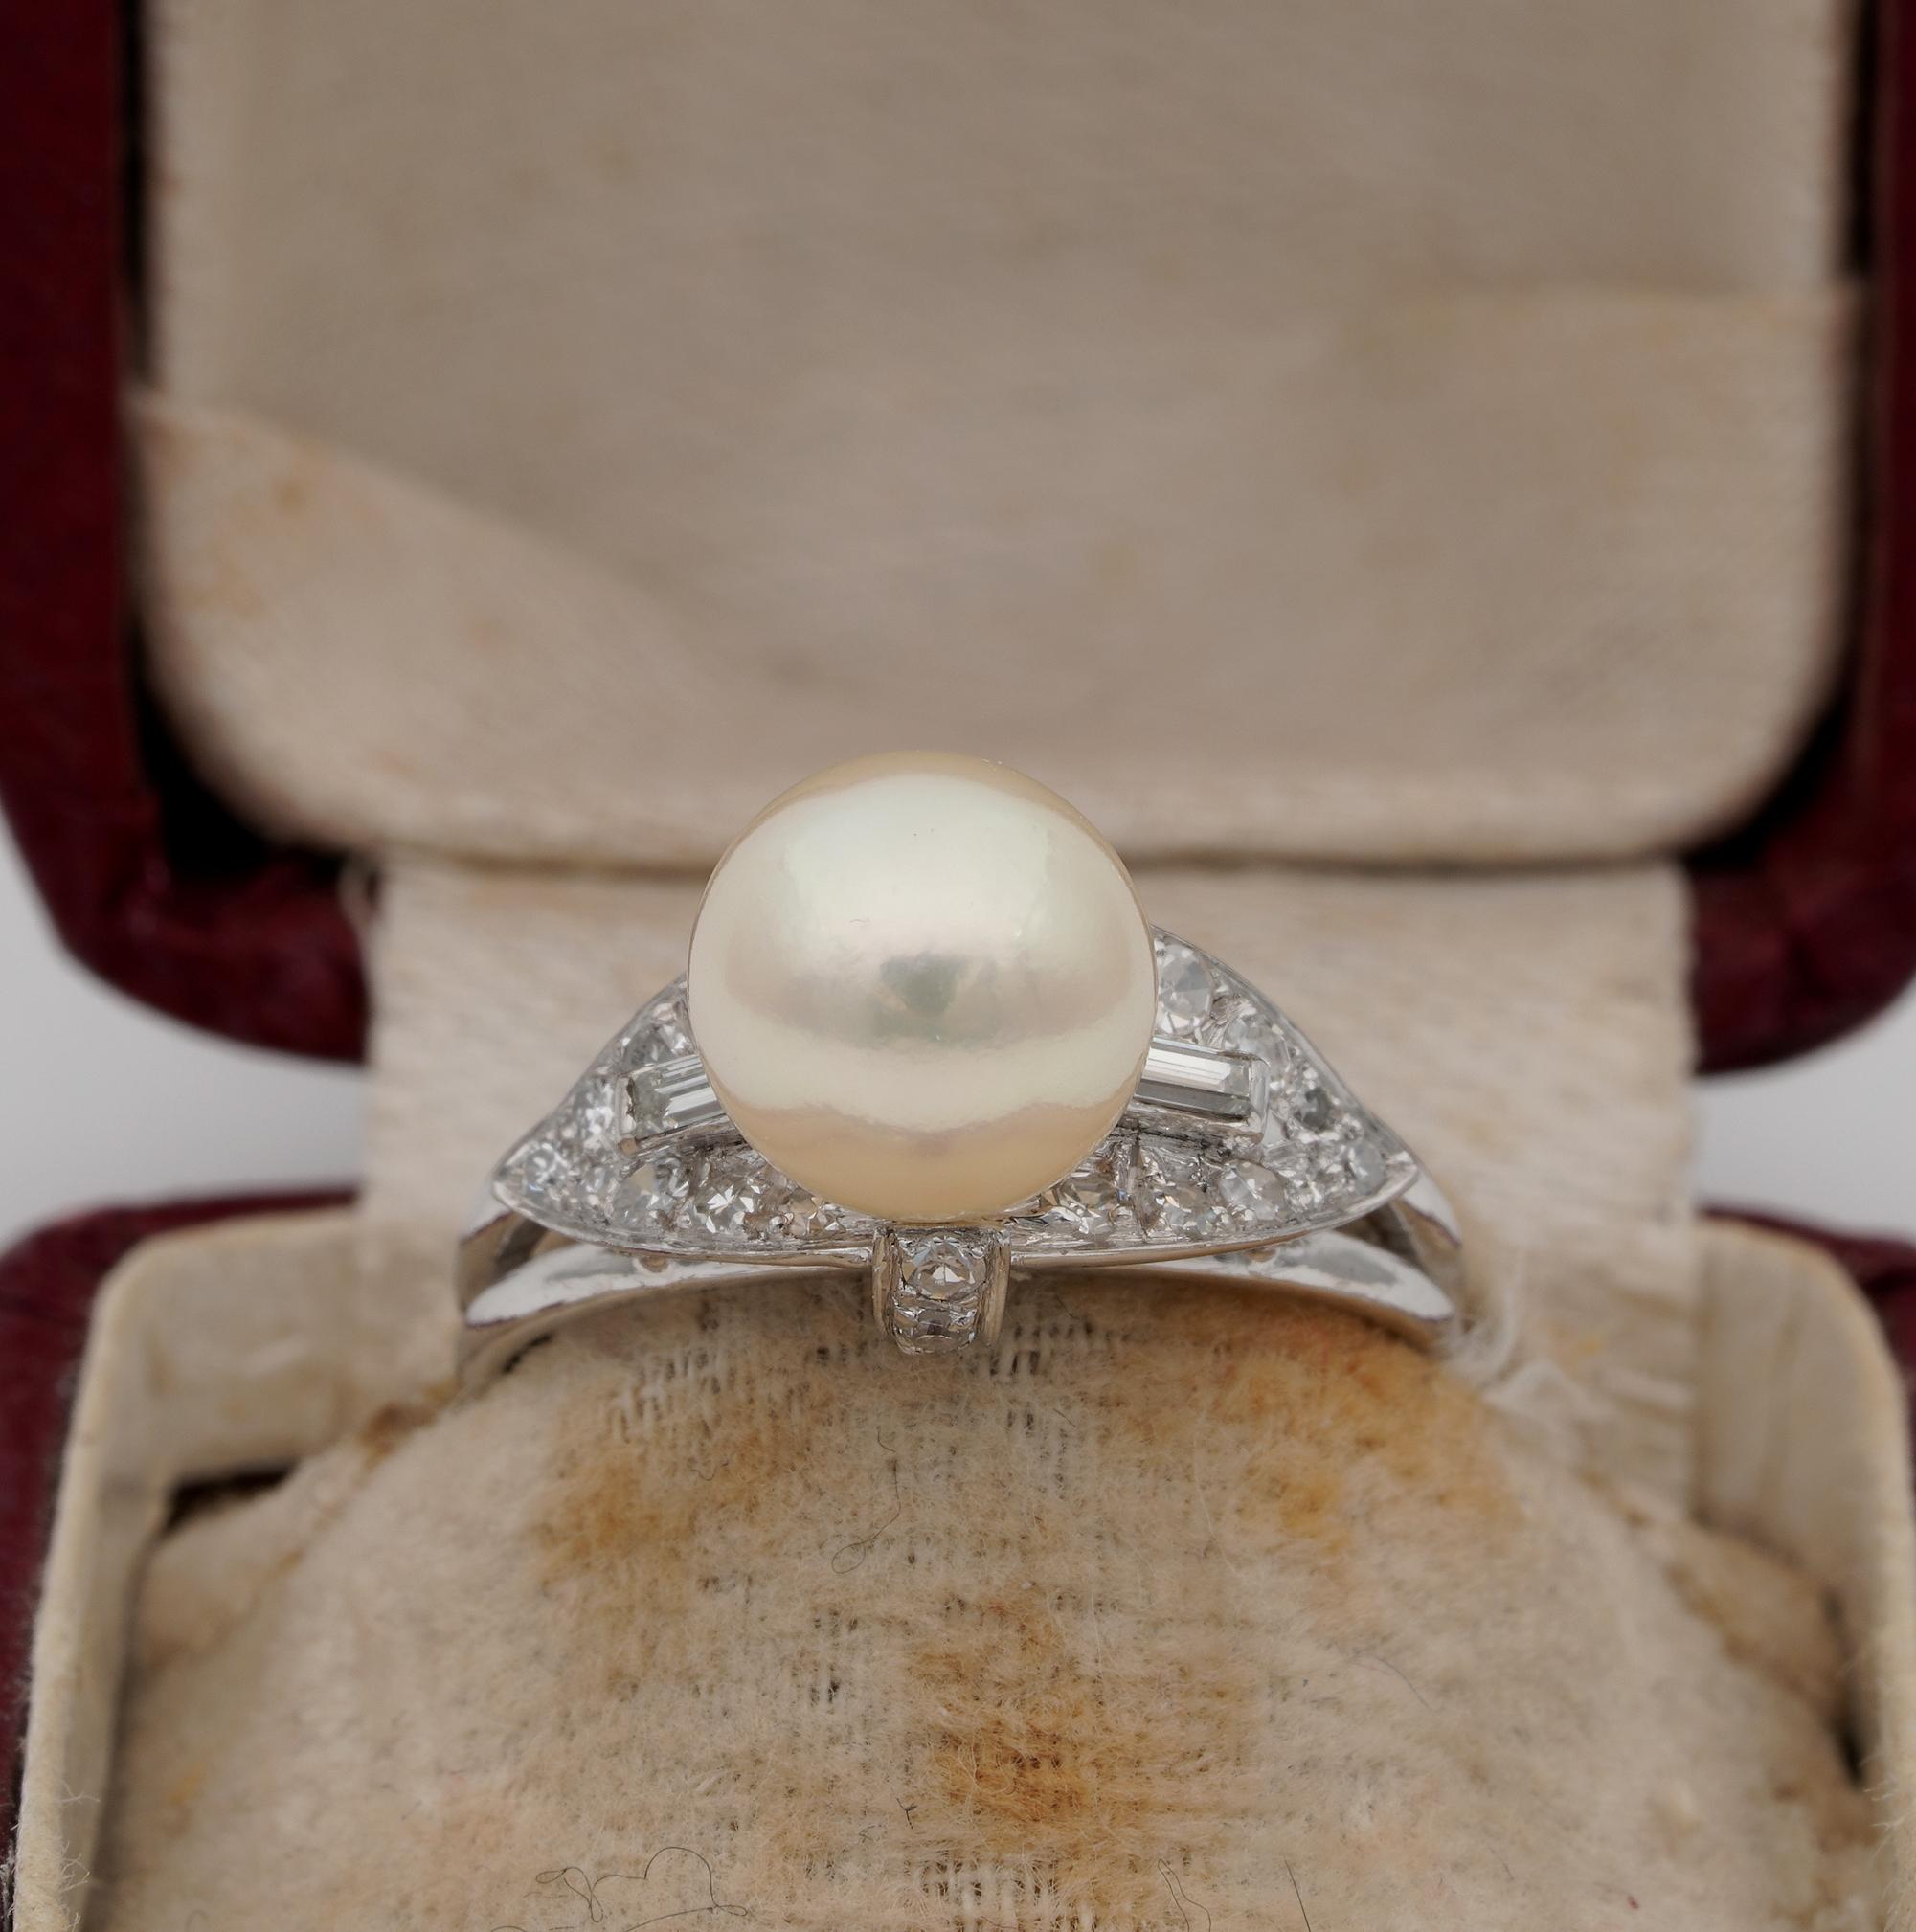 Ihre Majestät die Perle
Elegant entworfen und gefertigt ist dieser wunderschöne Solitärring aus der Mitte des Jahrhunderts, der durch Diamanten ergänzt wird.
nach 1960 ca, handgefertigt aus massivem Platin markiert
Das kunstvolle Design zeigt